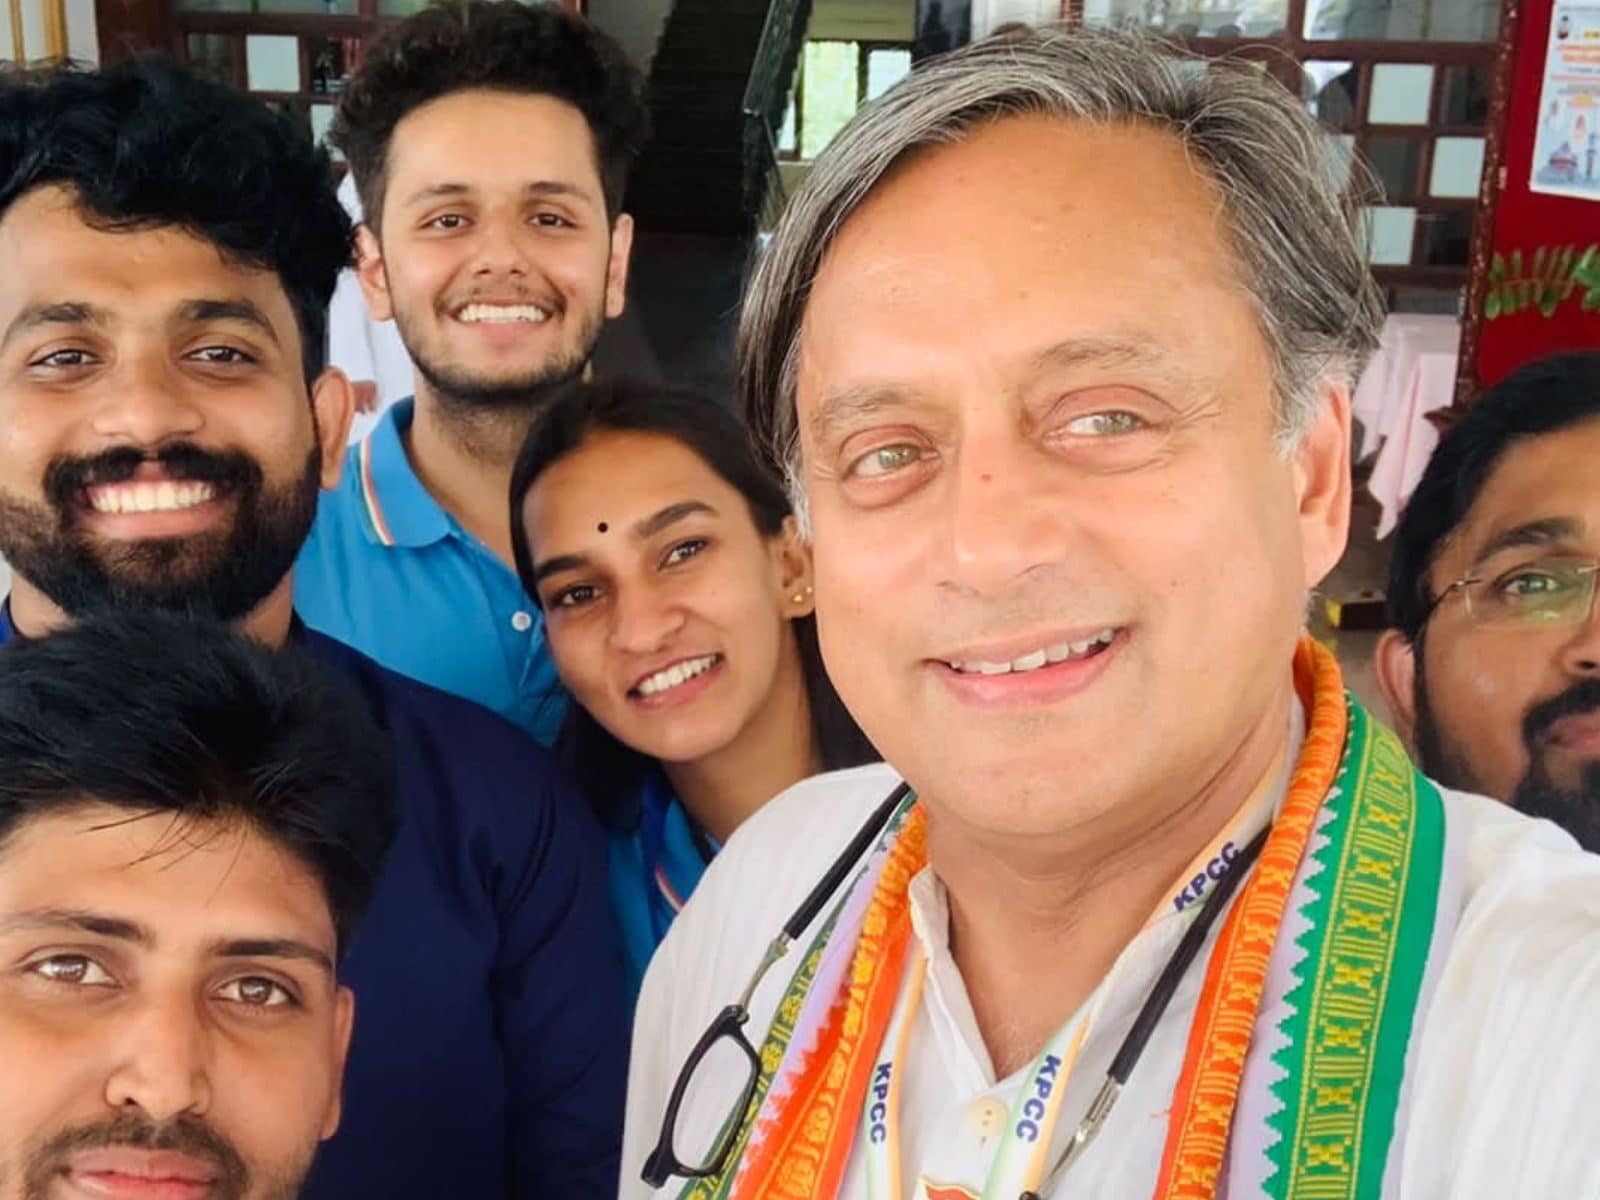 MP Mahua Moitra and Dr. Shashi Tharoor at Mango Party #mahuamoitra